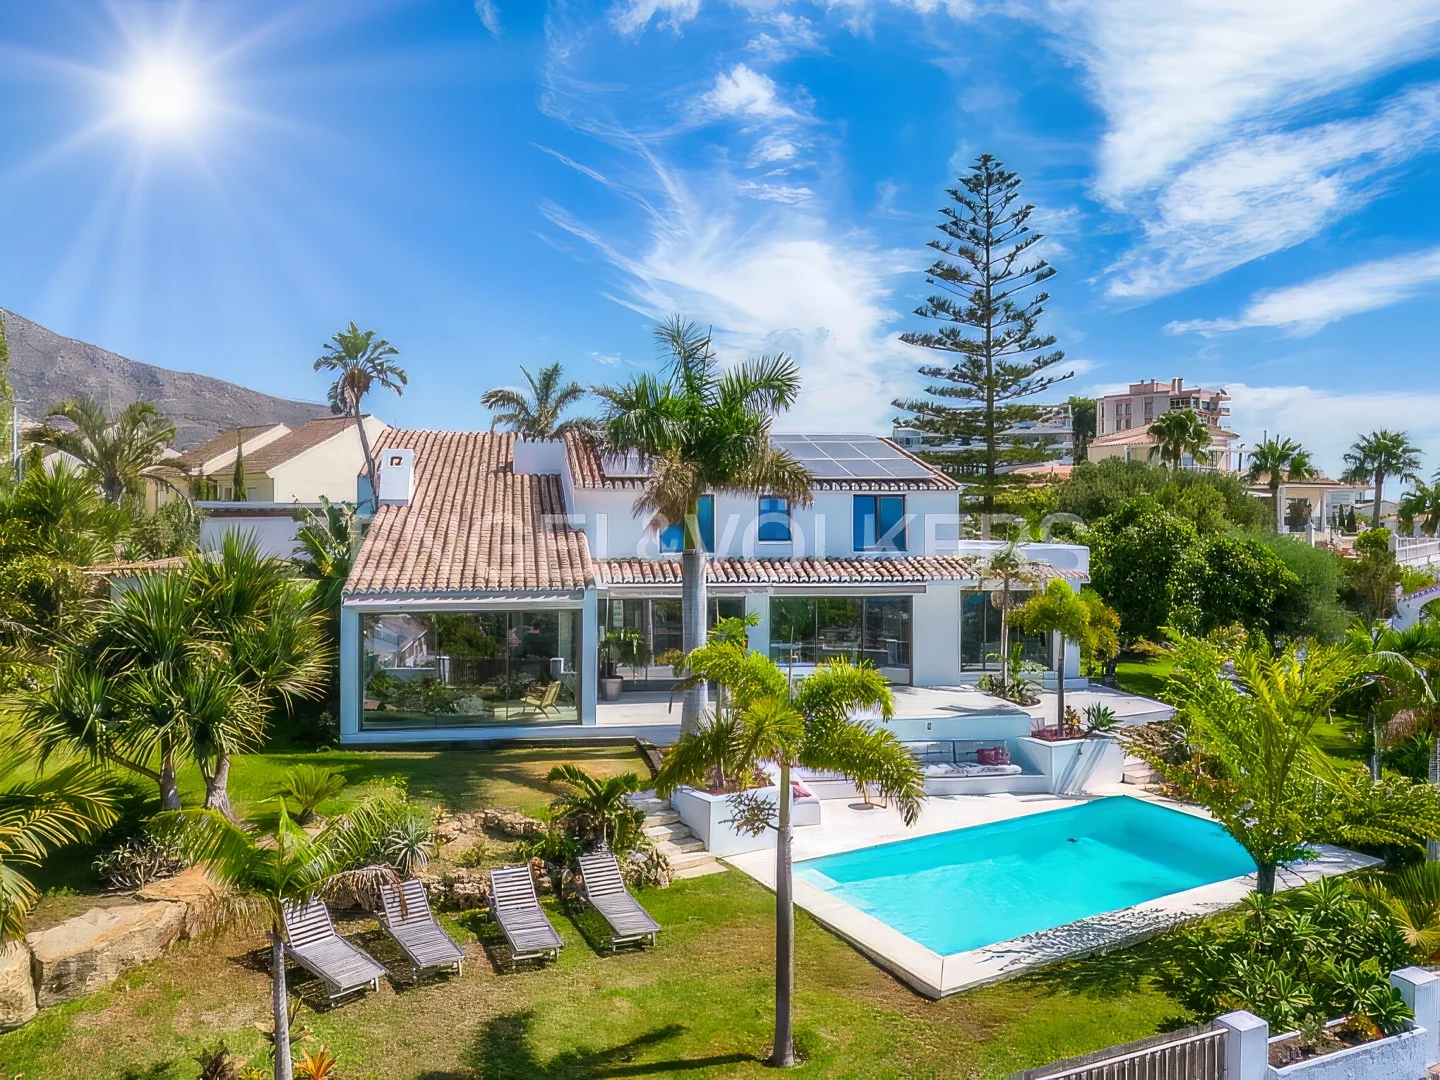 5-bedroom luxury villa with incredible sea views